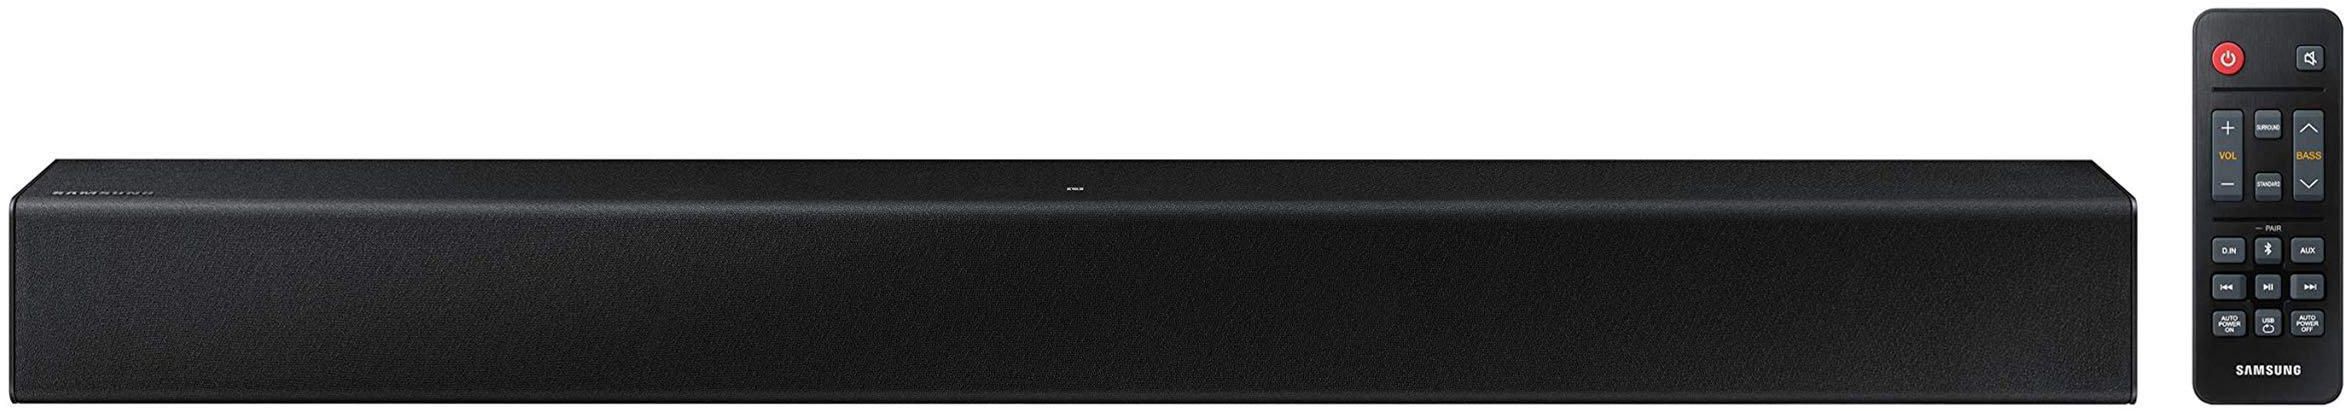 Samsung, 2.0 Ch Soundbar, Bulit-In Subwoofer, Power 0.5 W, Black